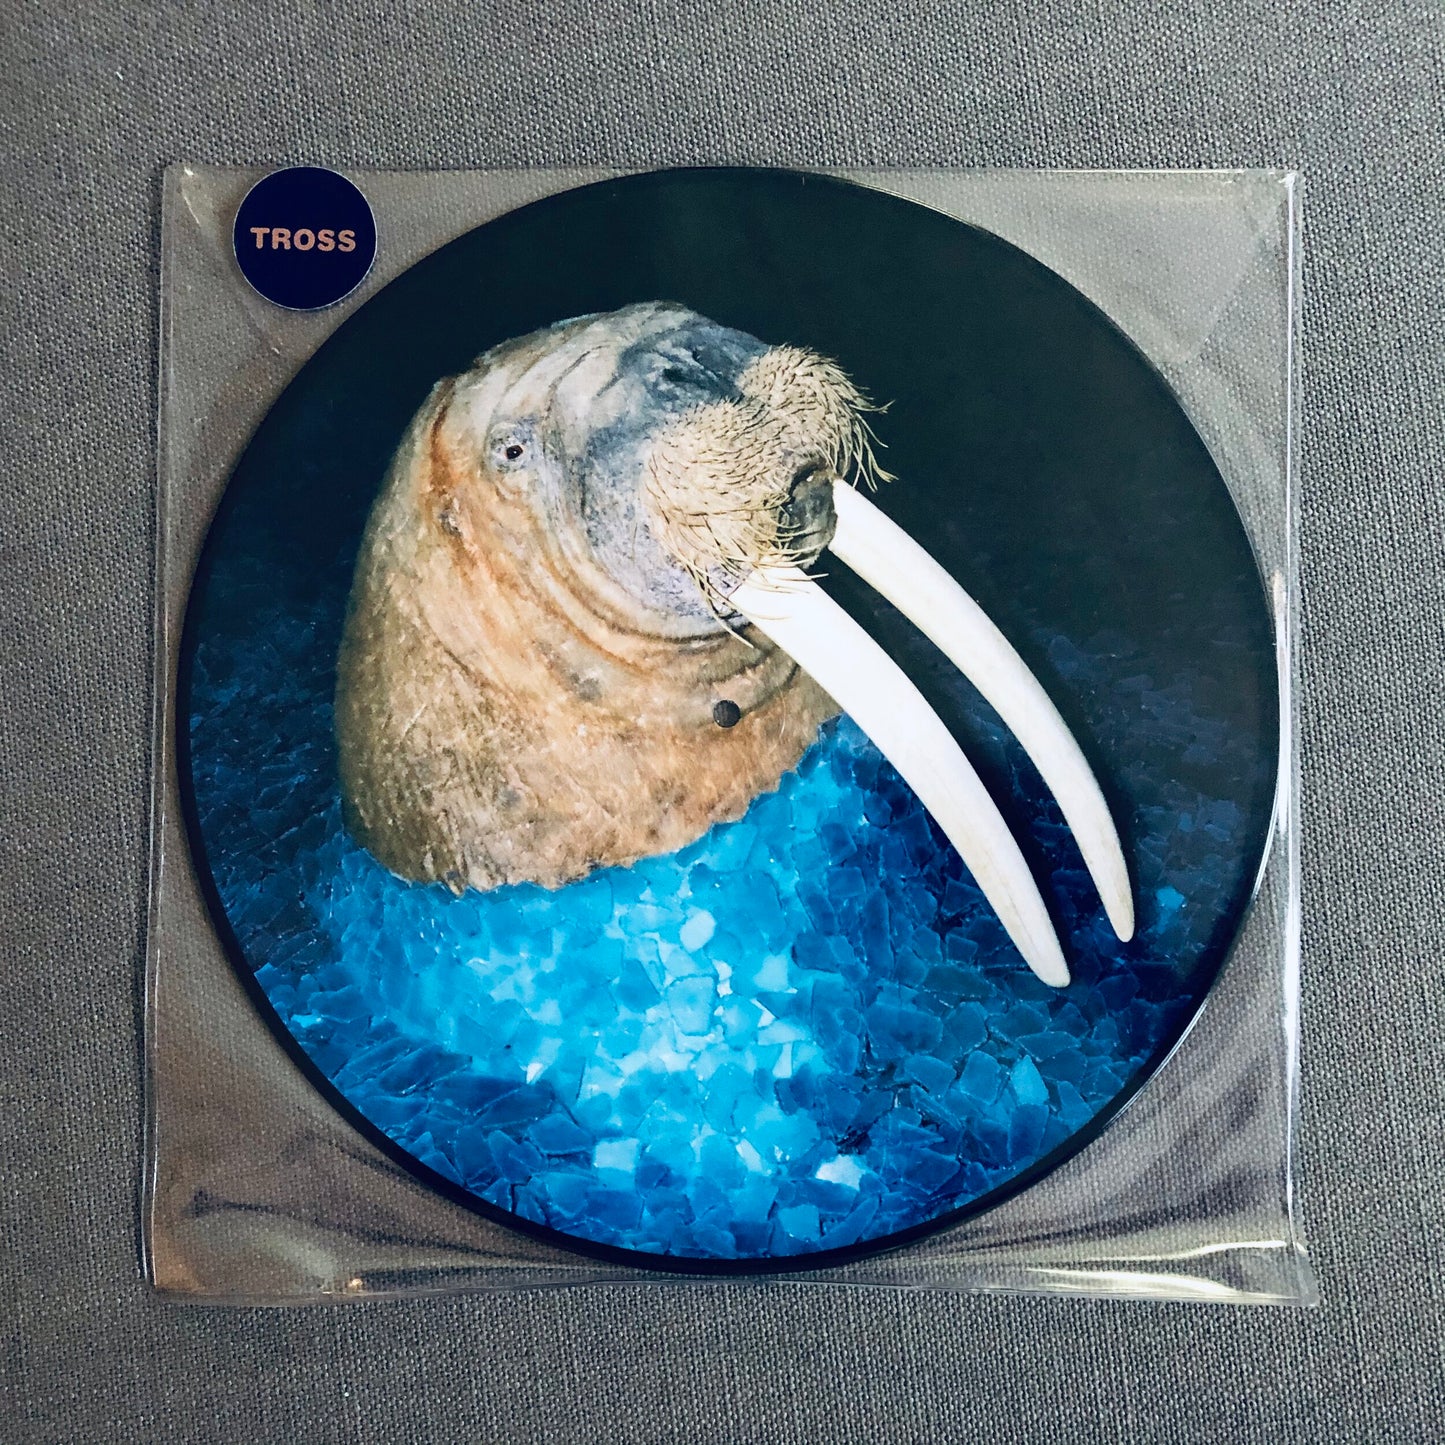 Tross – The Walrus EP